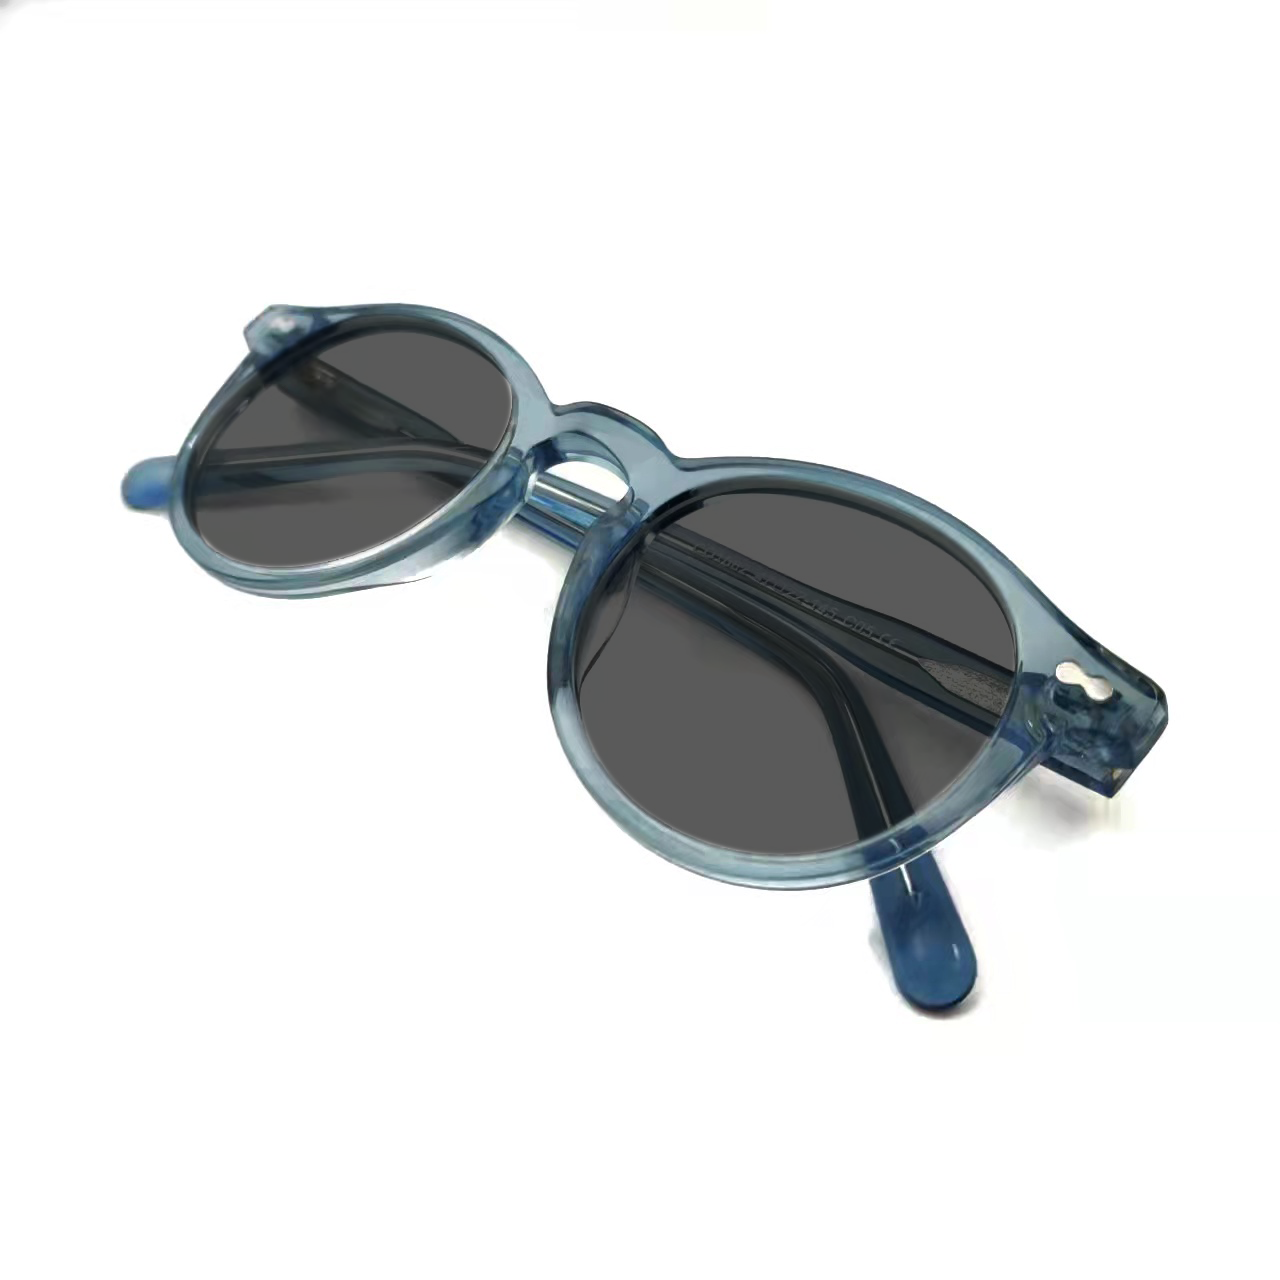 Black Acetate Customized Polarized Sunglasses Oversized Shades Custom Made Eyeglasses Manufacturers